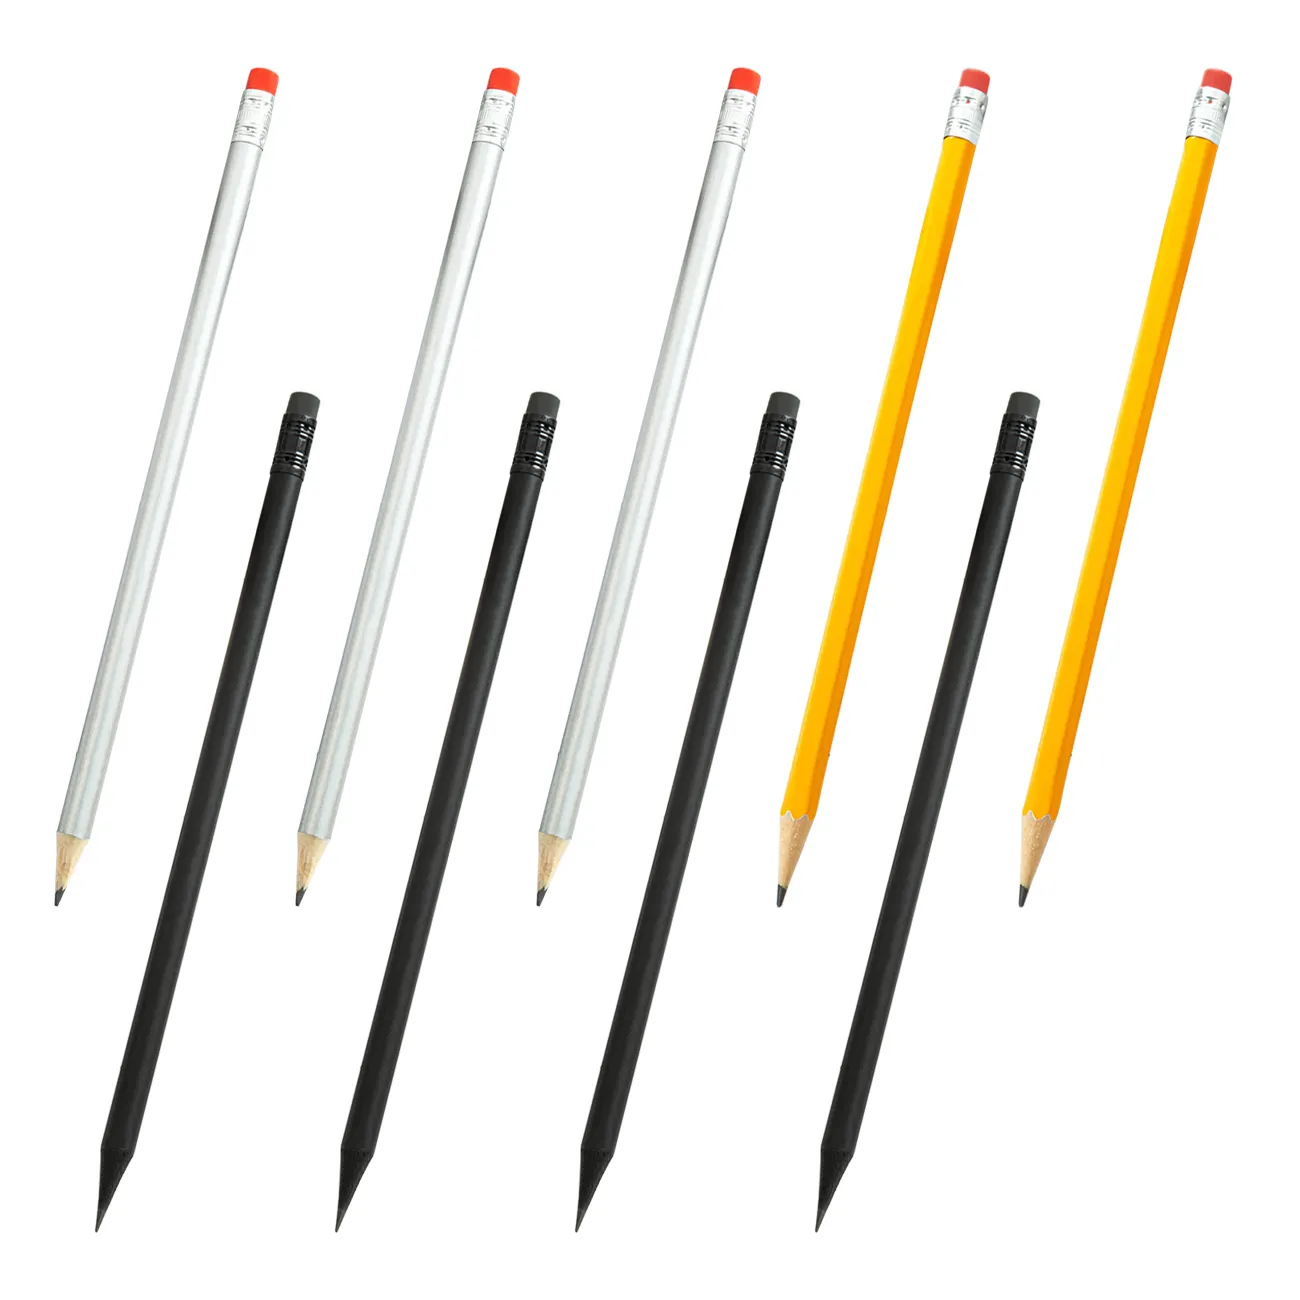 Promosyon kişiselleştirilmiş Cus logo baskılı siyah kalem ahşap çok renkli kurşun kalem silgi ile HB kalem